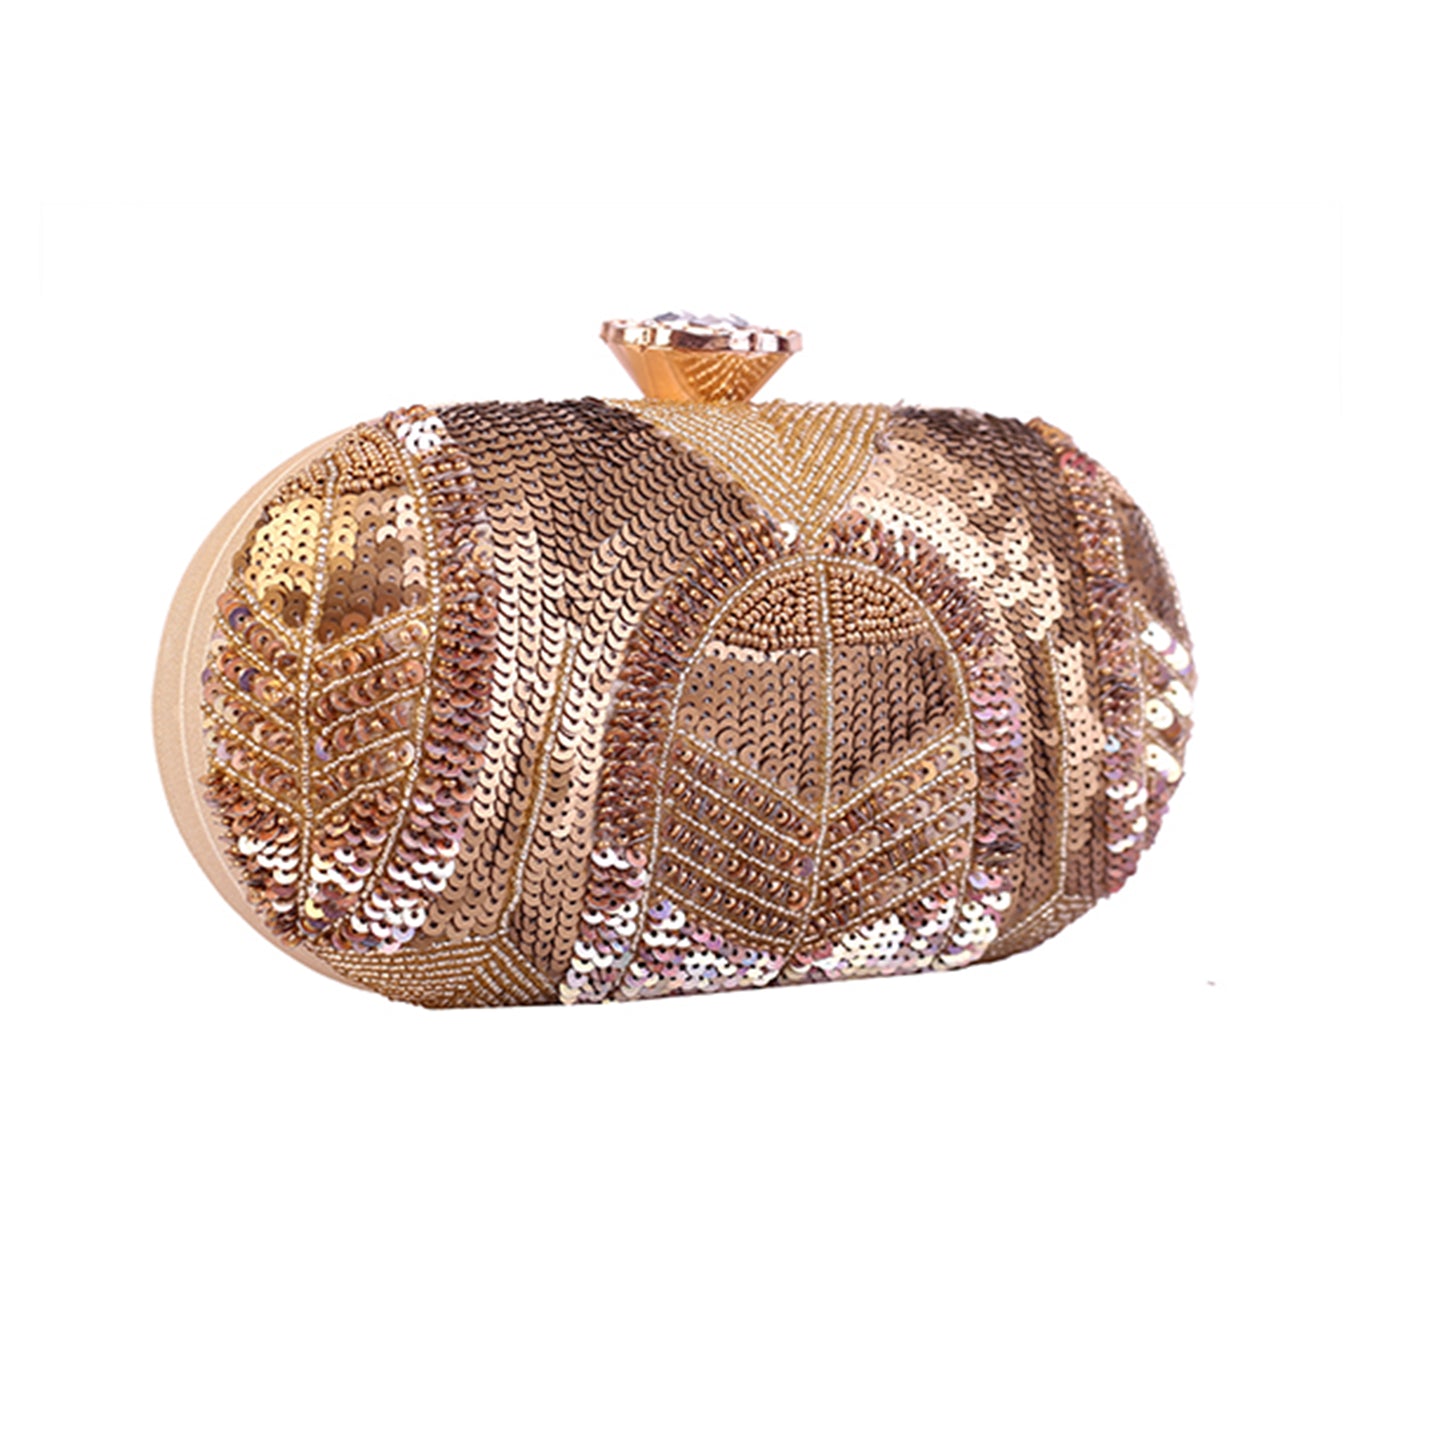 Angeline's Handcrafted Royal Gold designer Clutch Bag